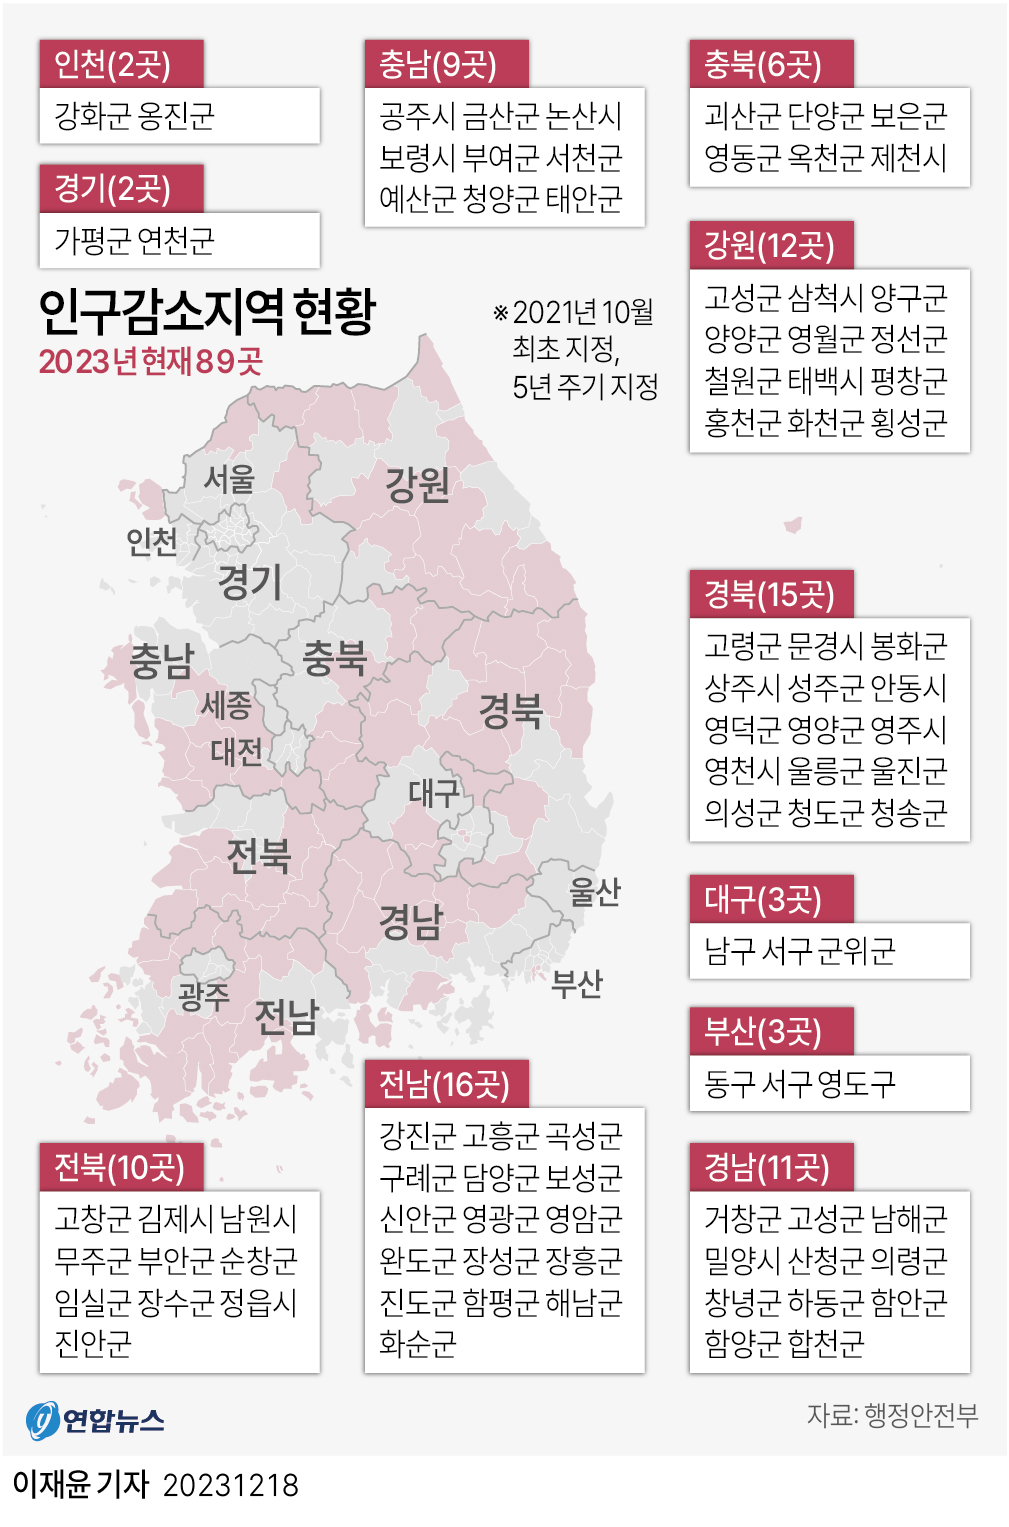 인구감소지역 내 4억원 이하 주택 사도 '1주택자'…부산은 제외[연합뉴스]